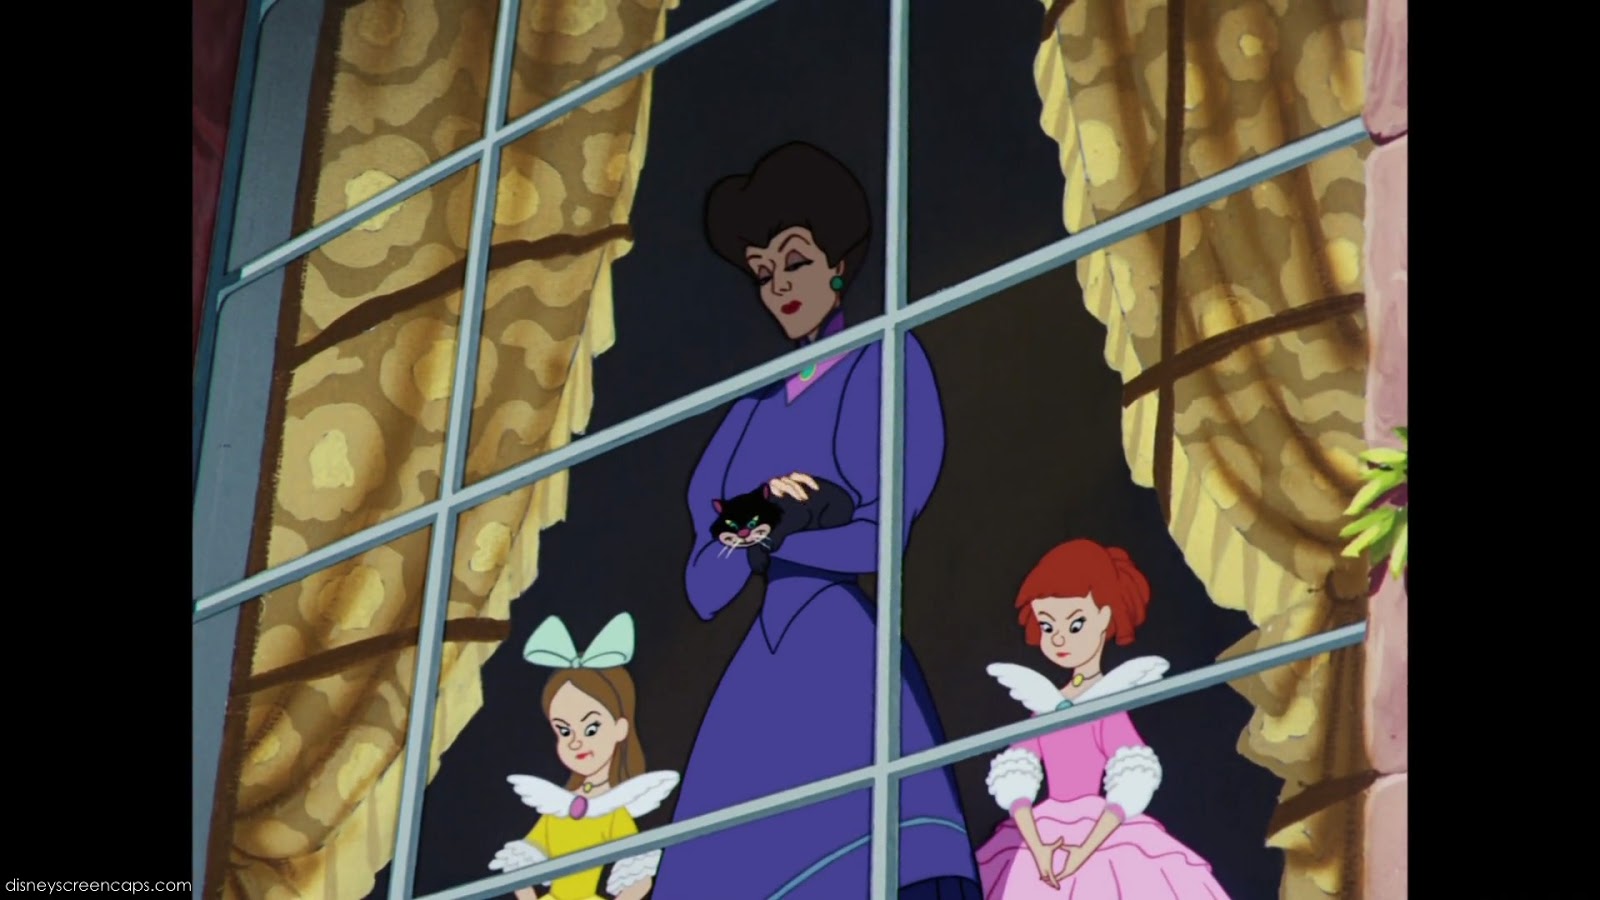 Disney's Cinderella: Live Action (1950) vs Cartoon (2015)